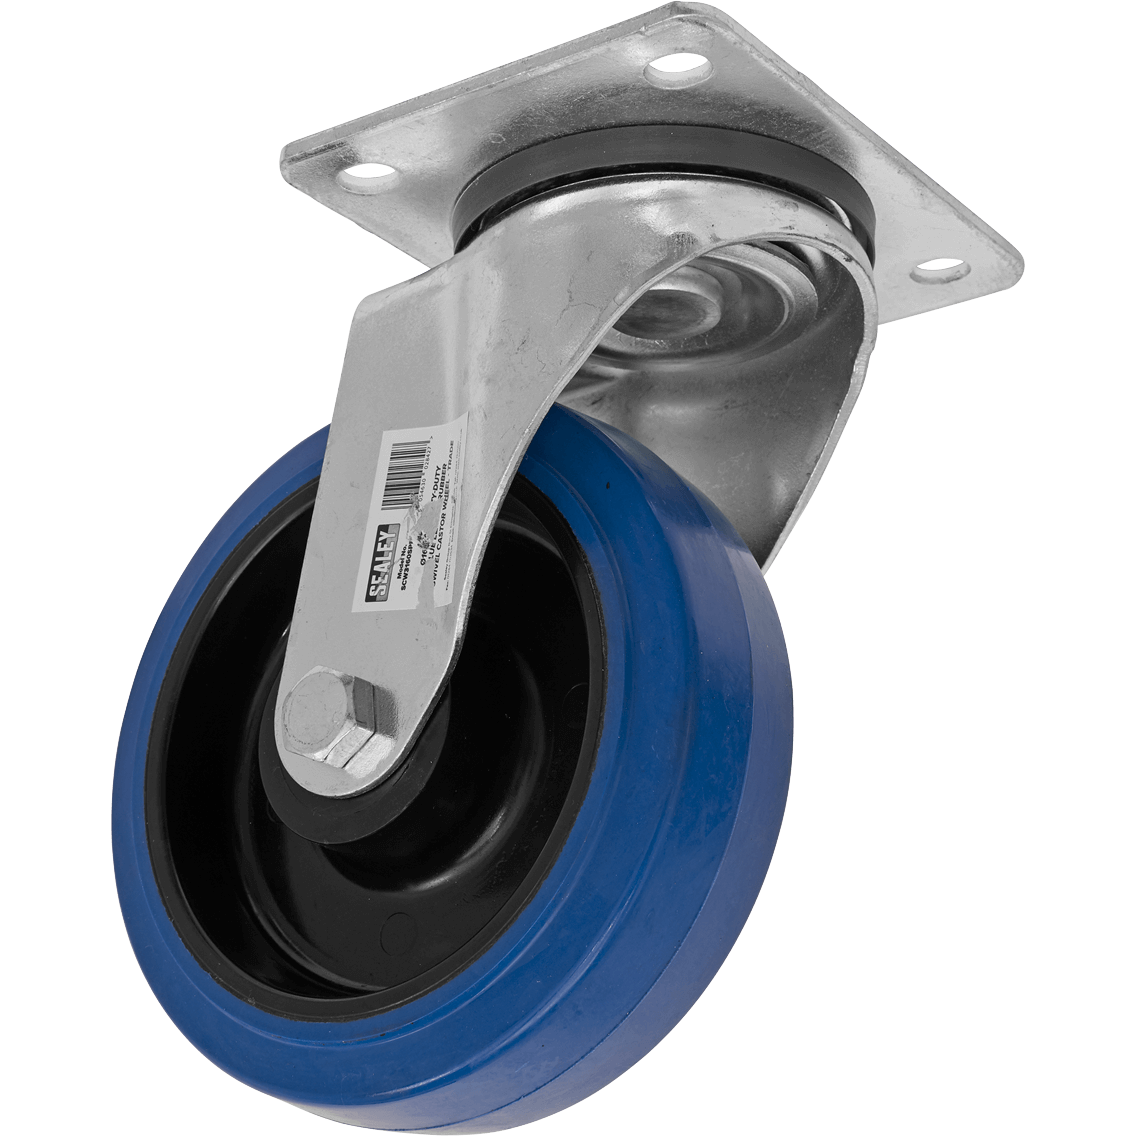 Sealey Heavy-Duty Blue Elastic Rubber Swivel Castor Wheel 160mm